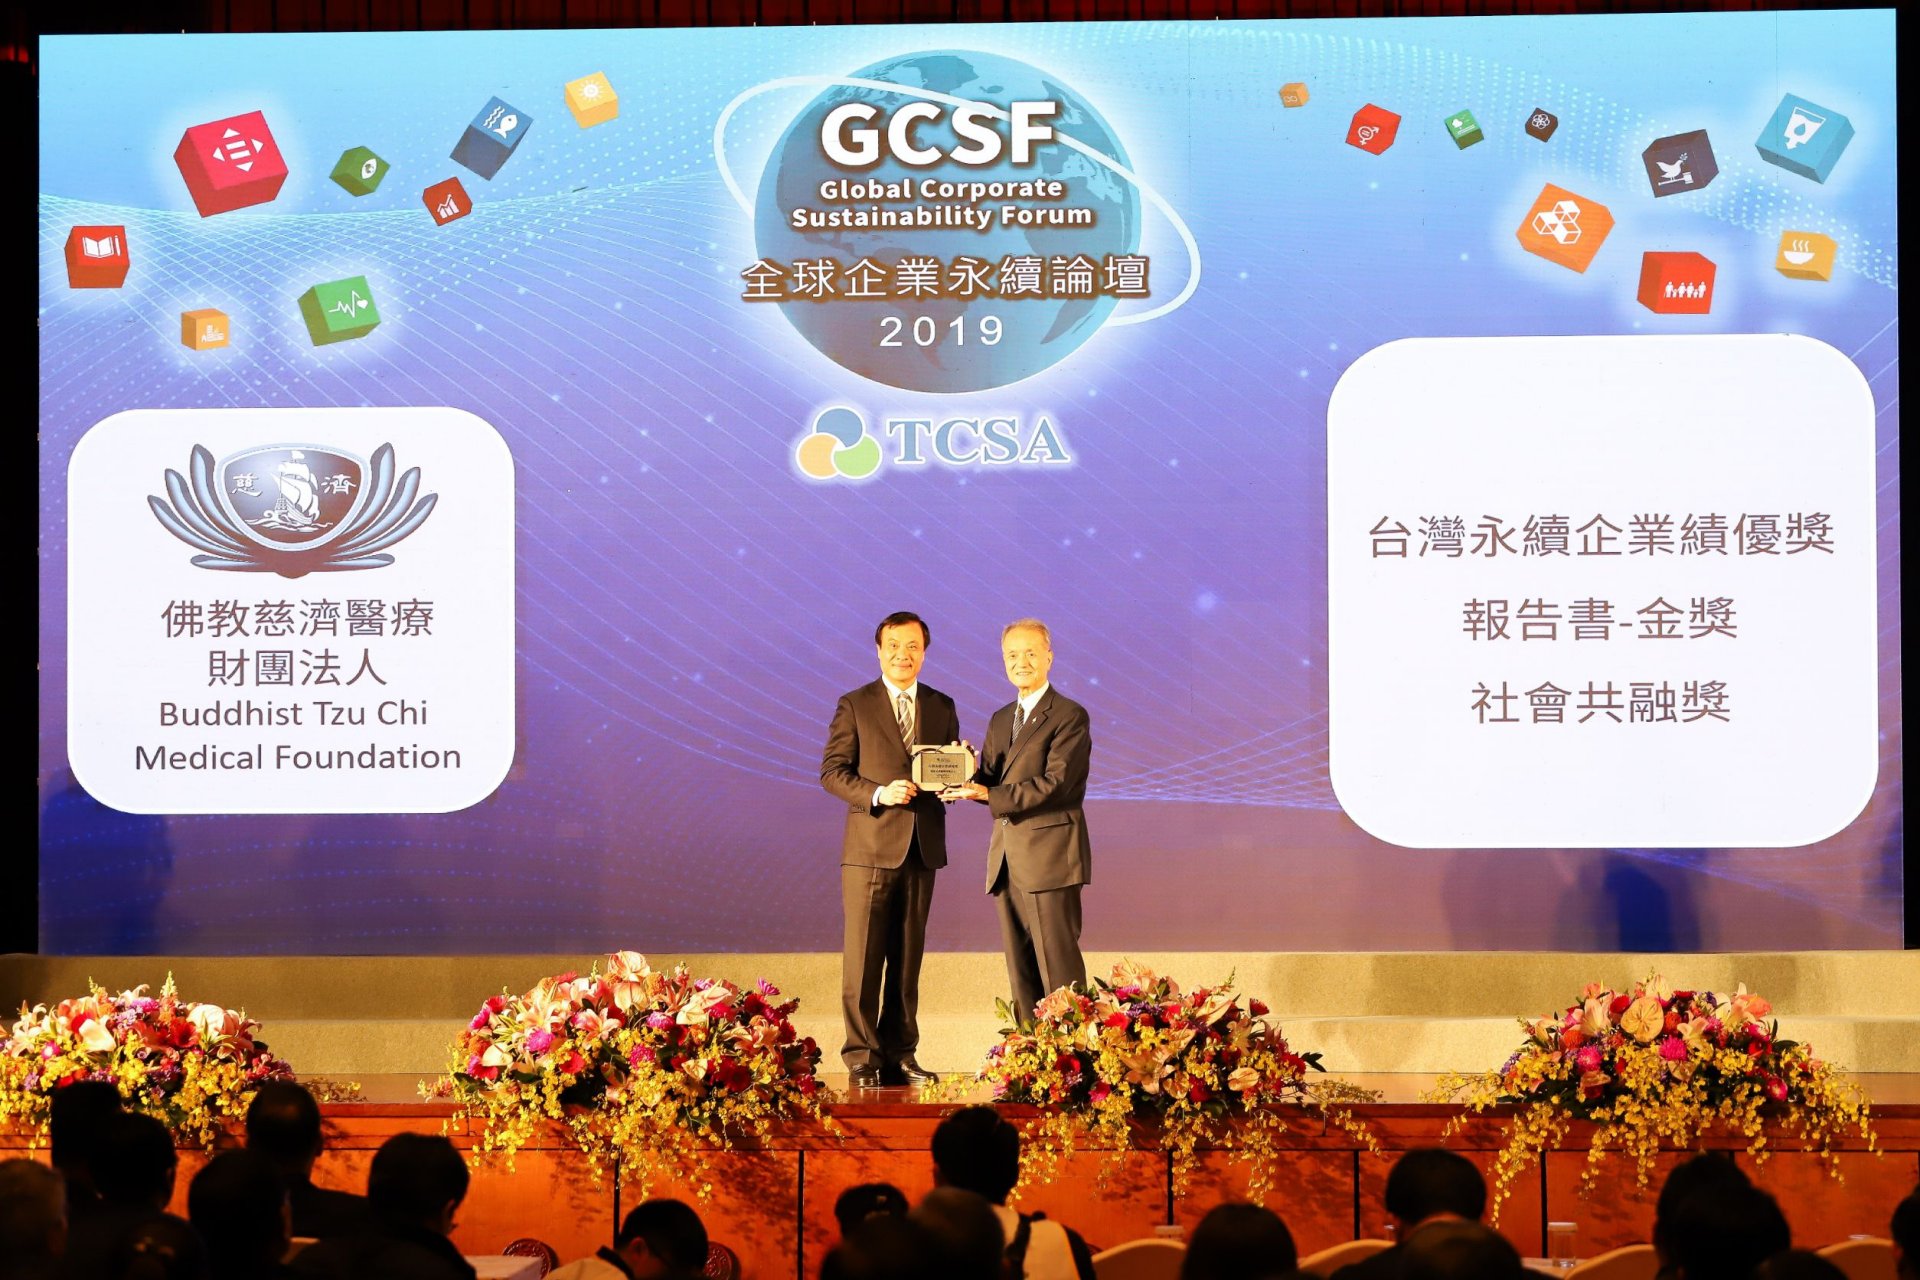 2019年佛教慈濟醫療財團法人榮獲「TCSA台灣企業永續獎」三項獎項，由林俊龍執行長代表受獎。